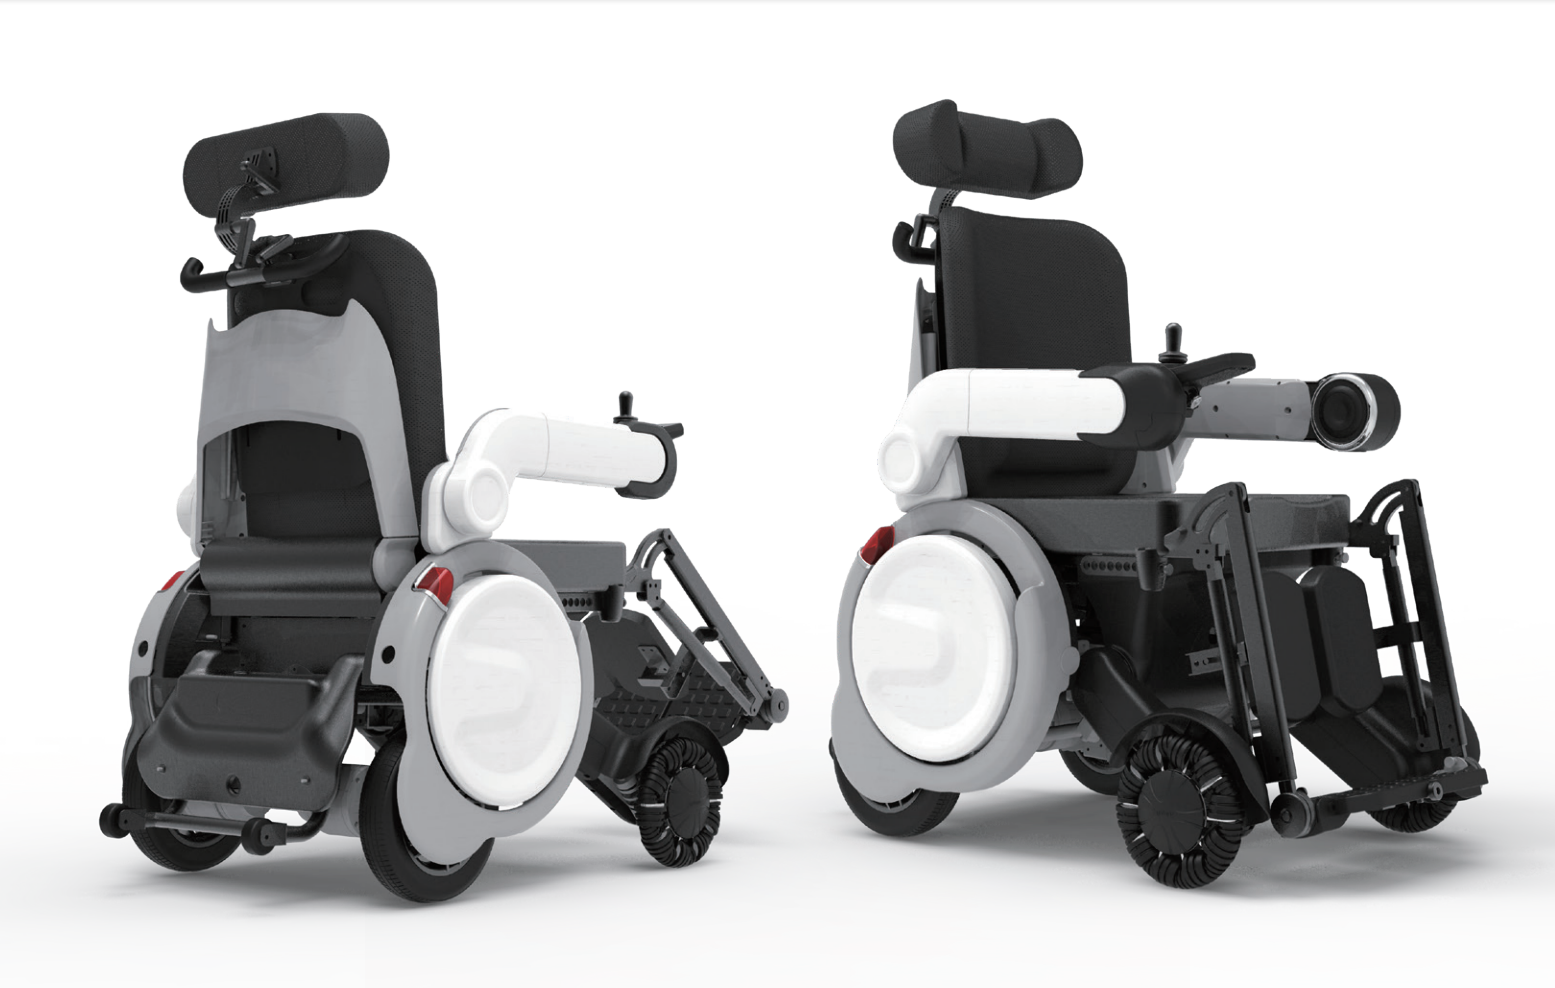 λανσάρει ένα προϊόν στην ΕΚΘΕΣΗ KIMES — Ηλεκτρικό πτυσσόμενο αναπηρικό αμαξίδιο